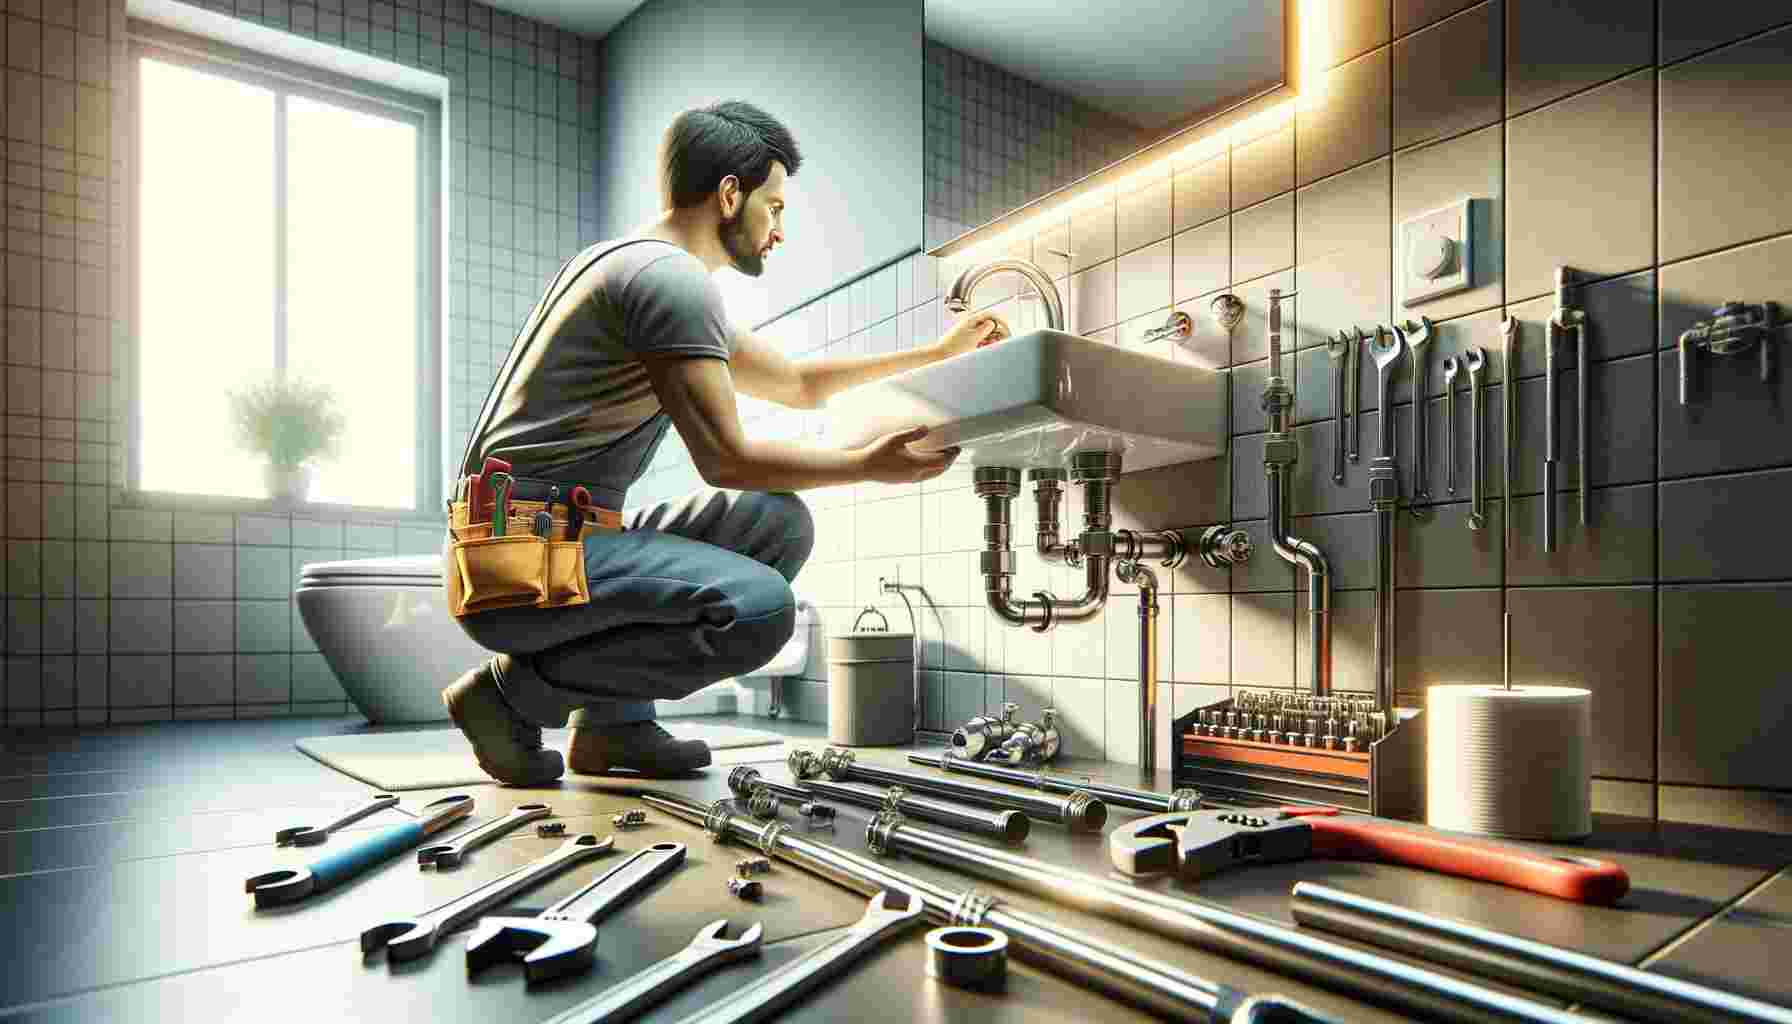 Le métier de plombier – une vue d’ensemble des responsabilités et des compétences requises